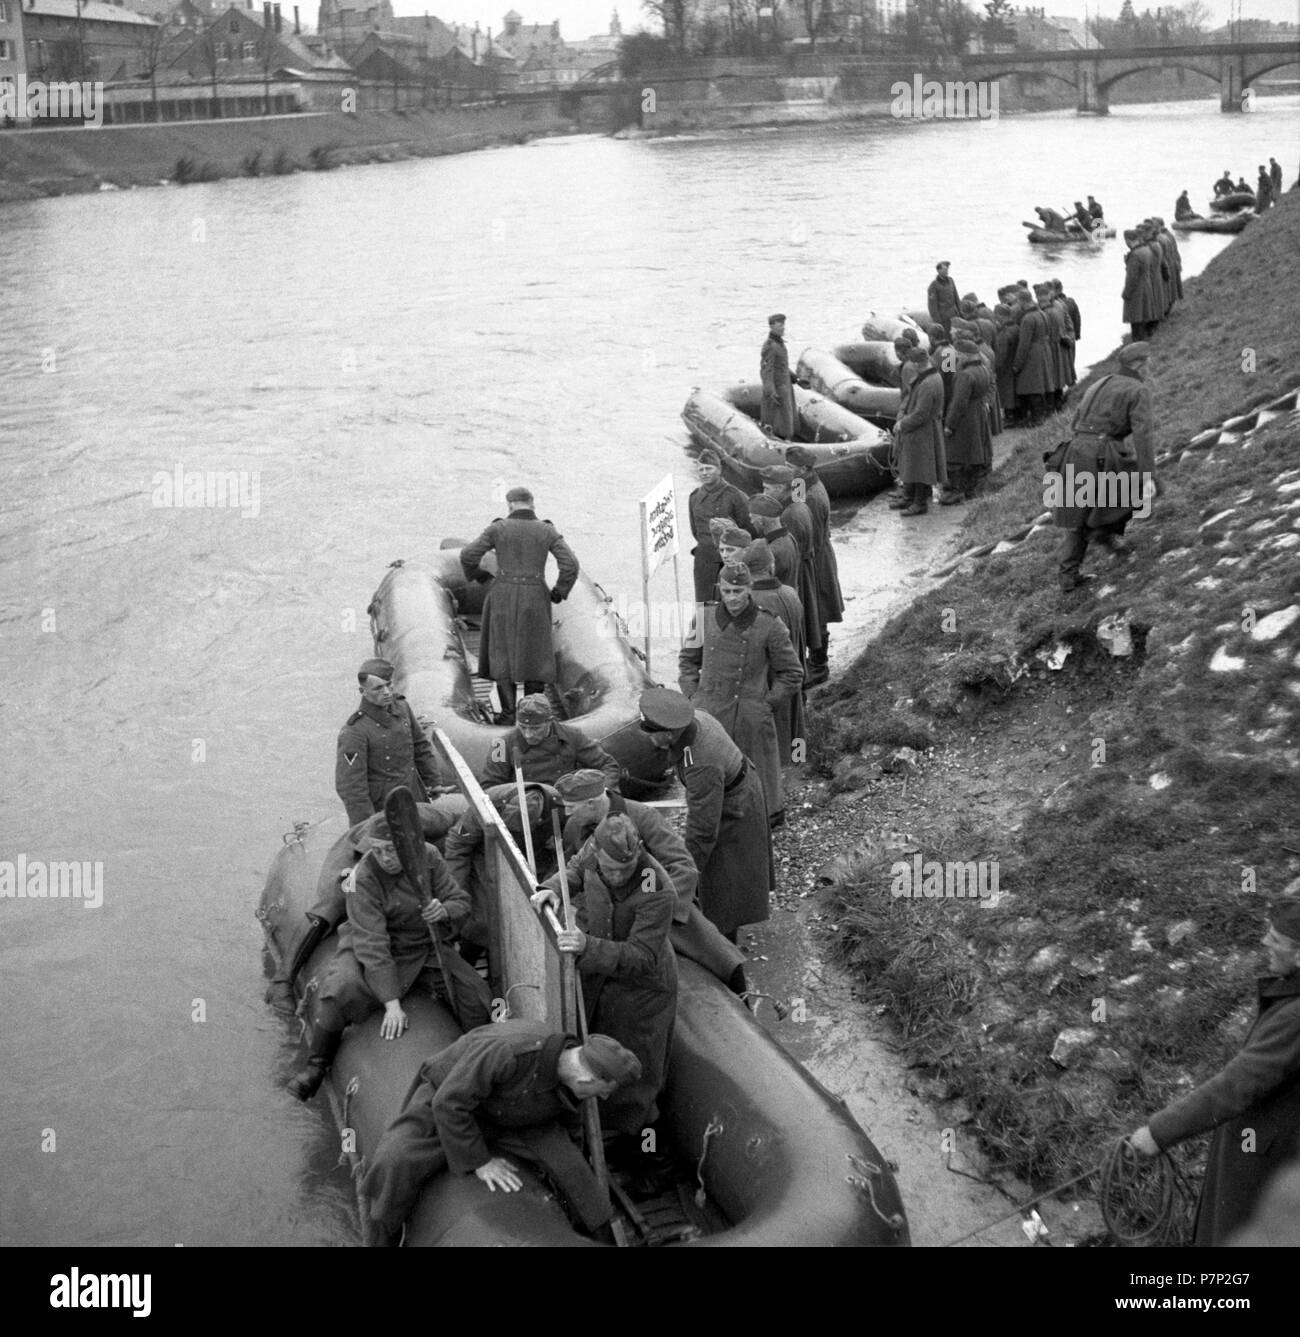 Env. 1939,1941, la formation, la Wehrmacht légende originale : Ulm, bateaux gonflables sur le Danube, Ulm, Allemagne Banque D'Images